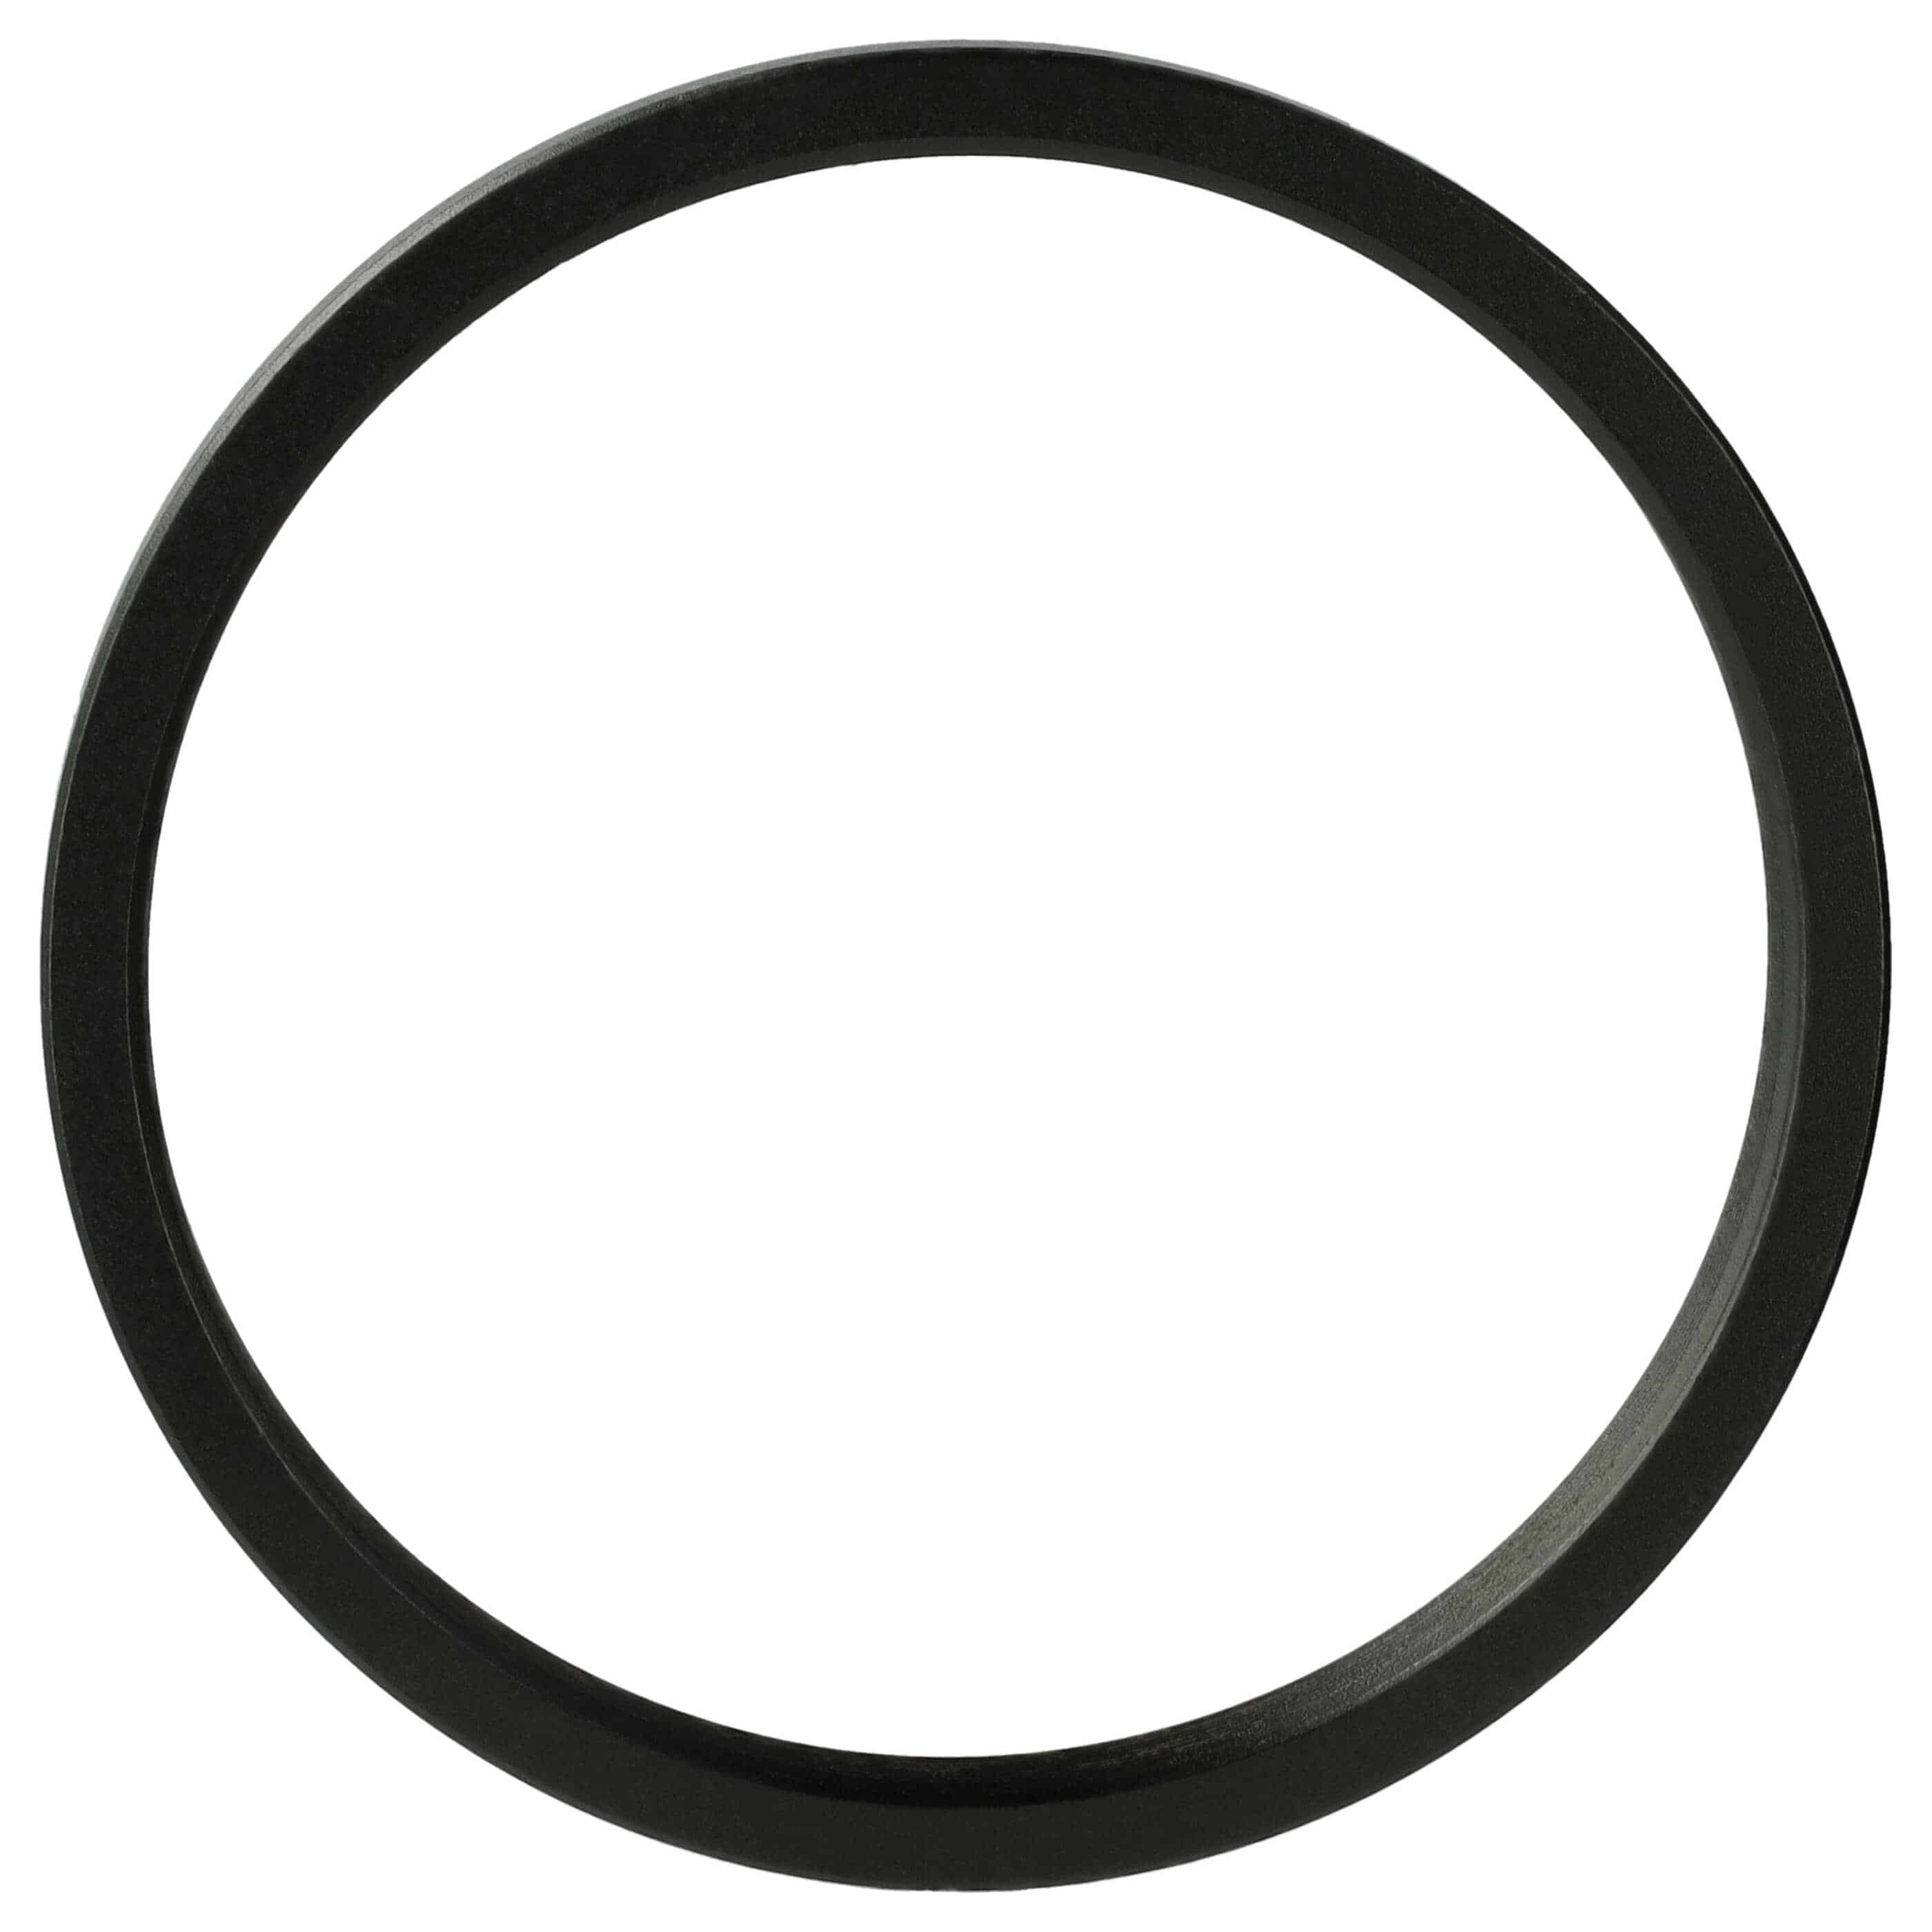 Redukcja filtrowa adapter Step-Down 49 mm - 46 mm pasująca do obiektywu - metal, czarny